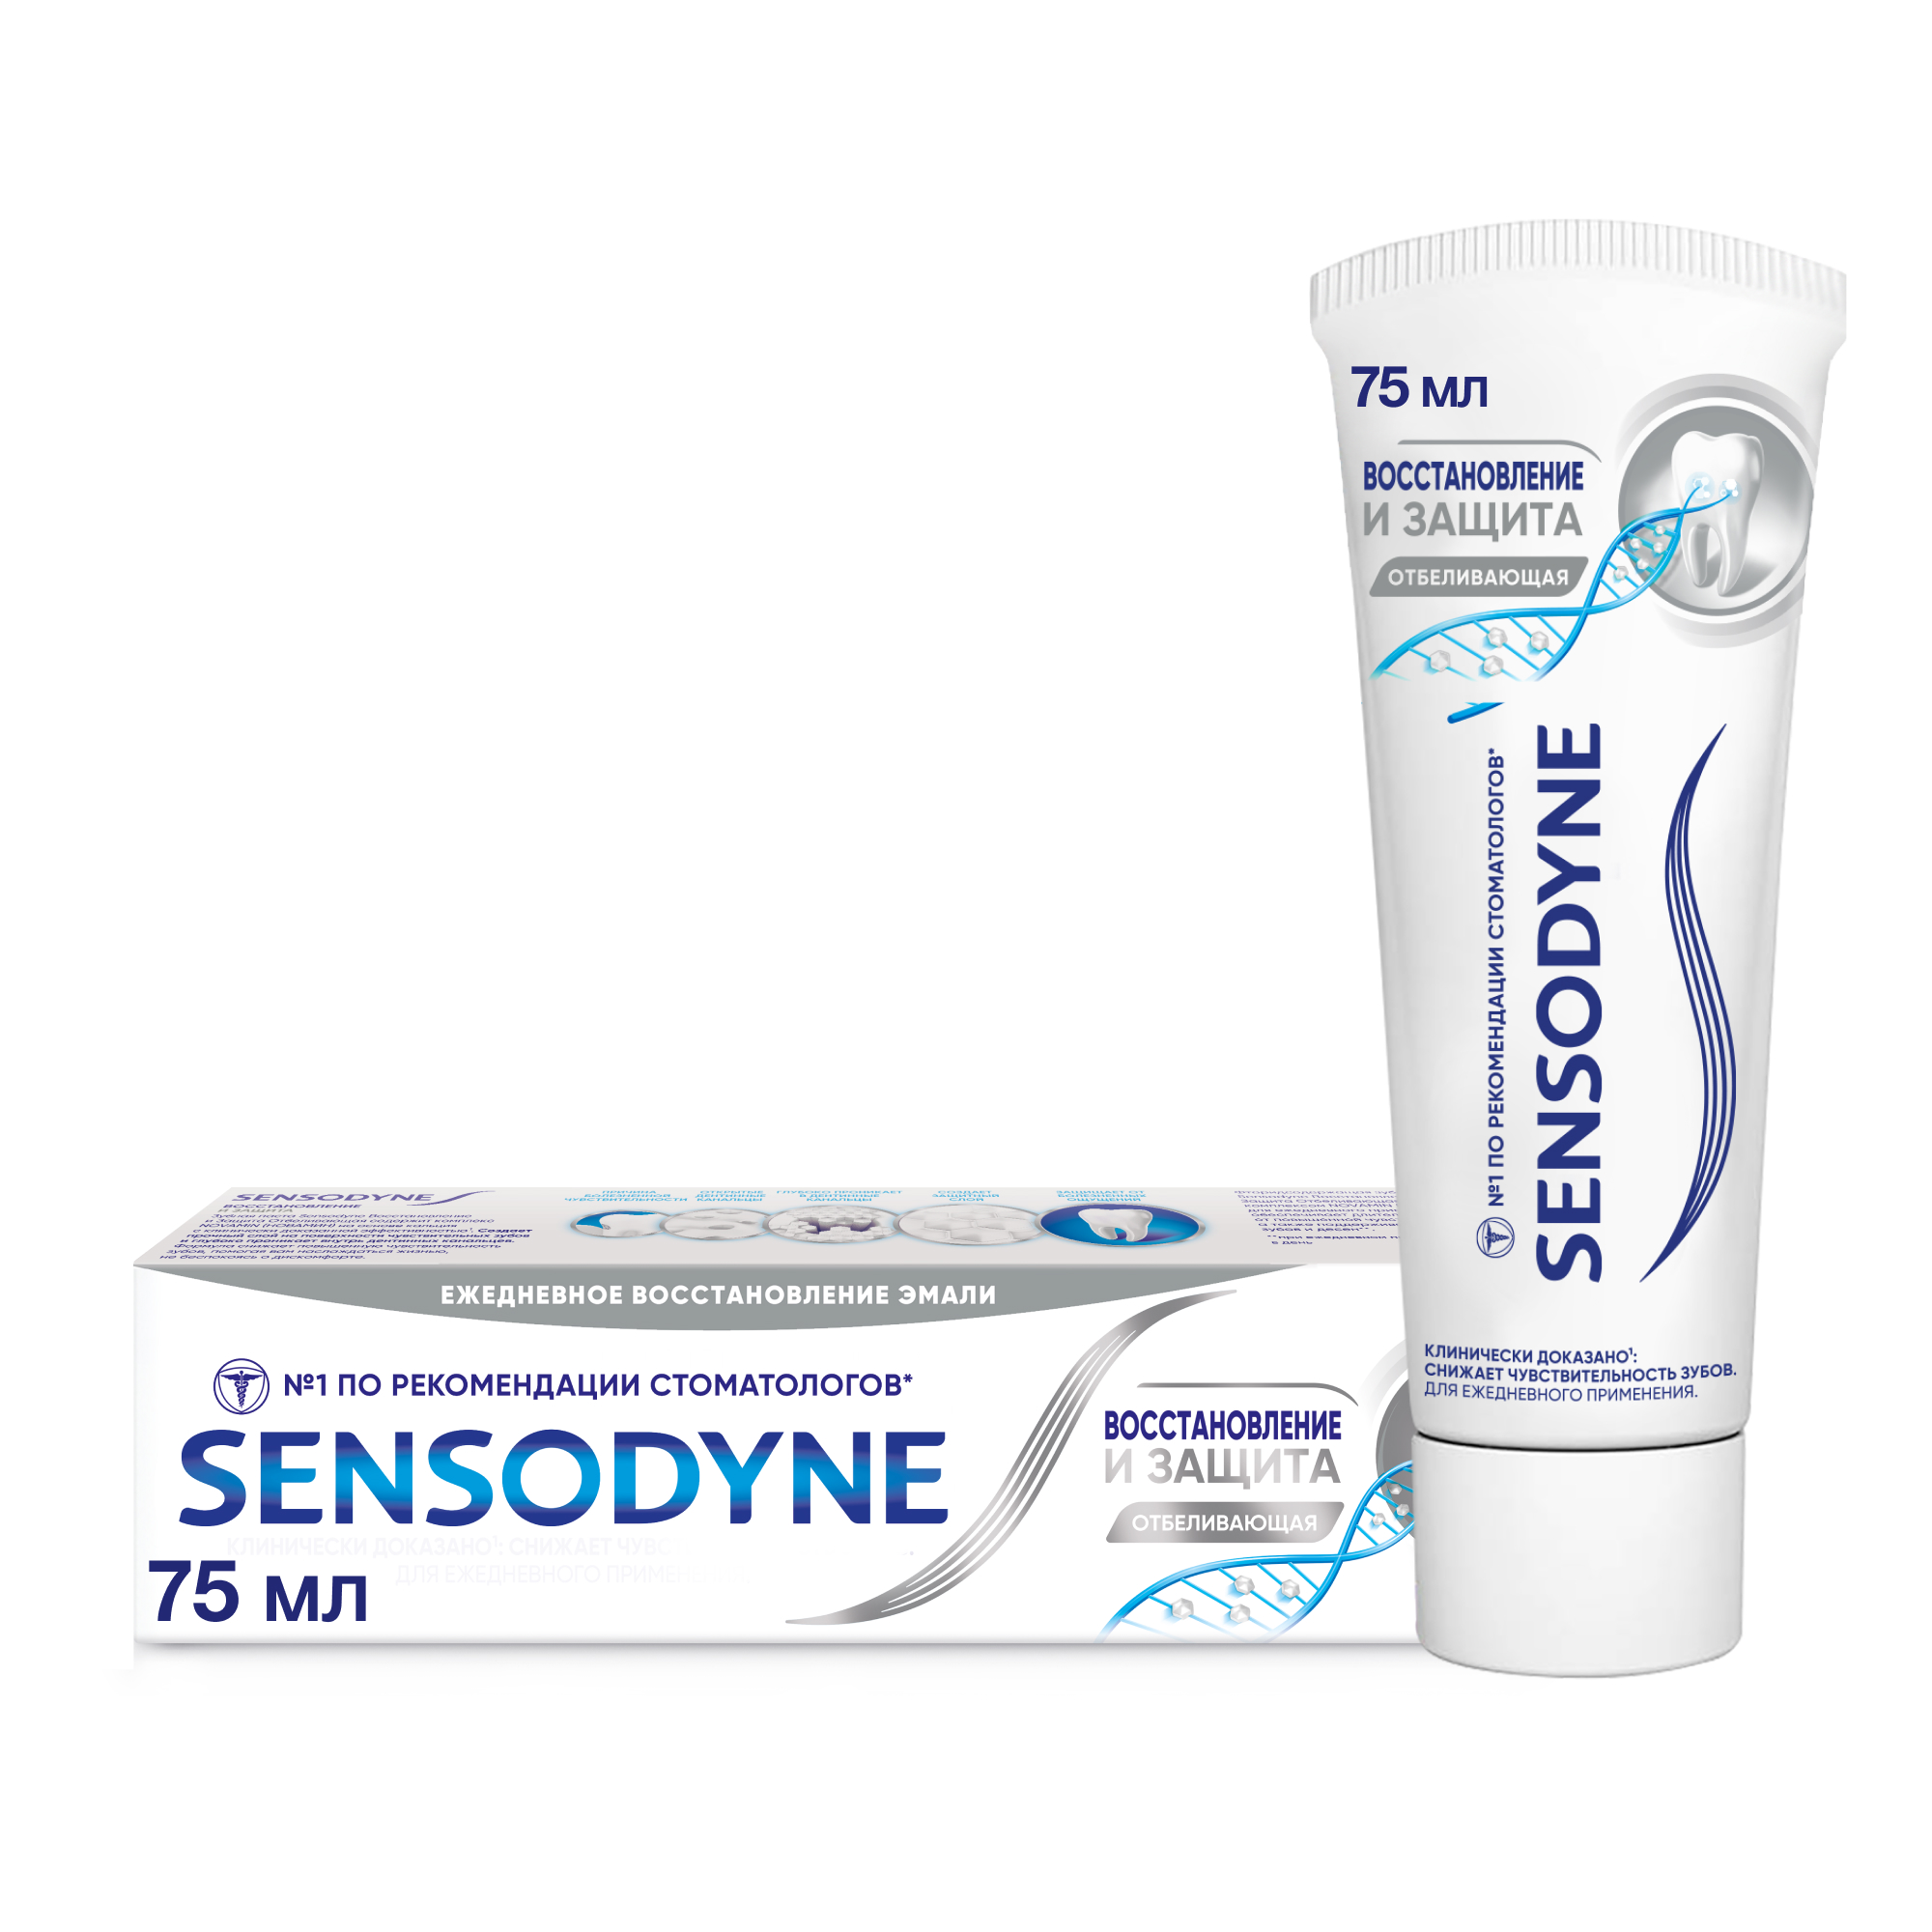 Зубная паста Sensodyne Восстановление и Защита 75 мл зубная паста sensodyne восстановление и защита 75мл p70618 pns7061800